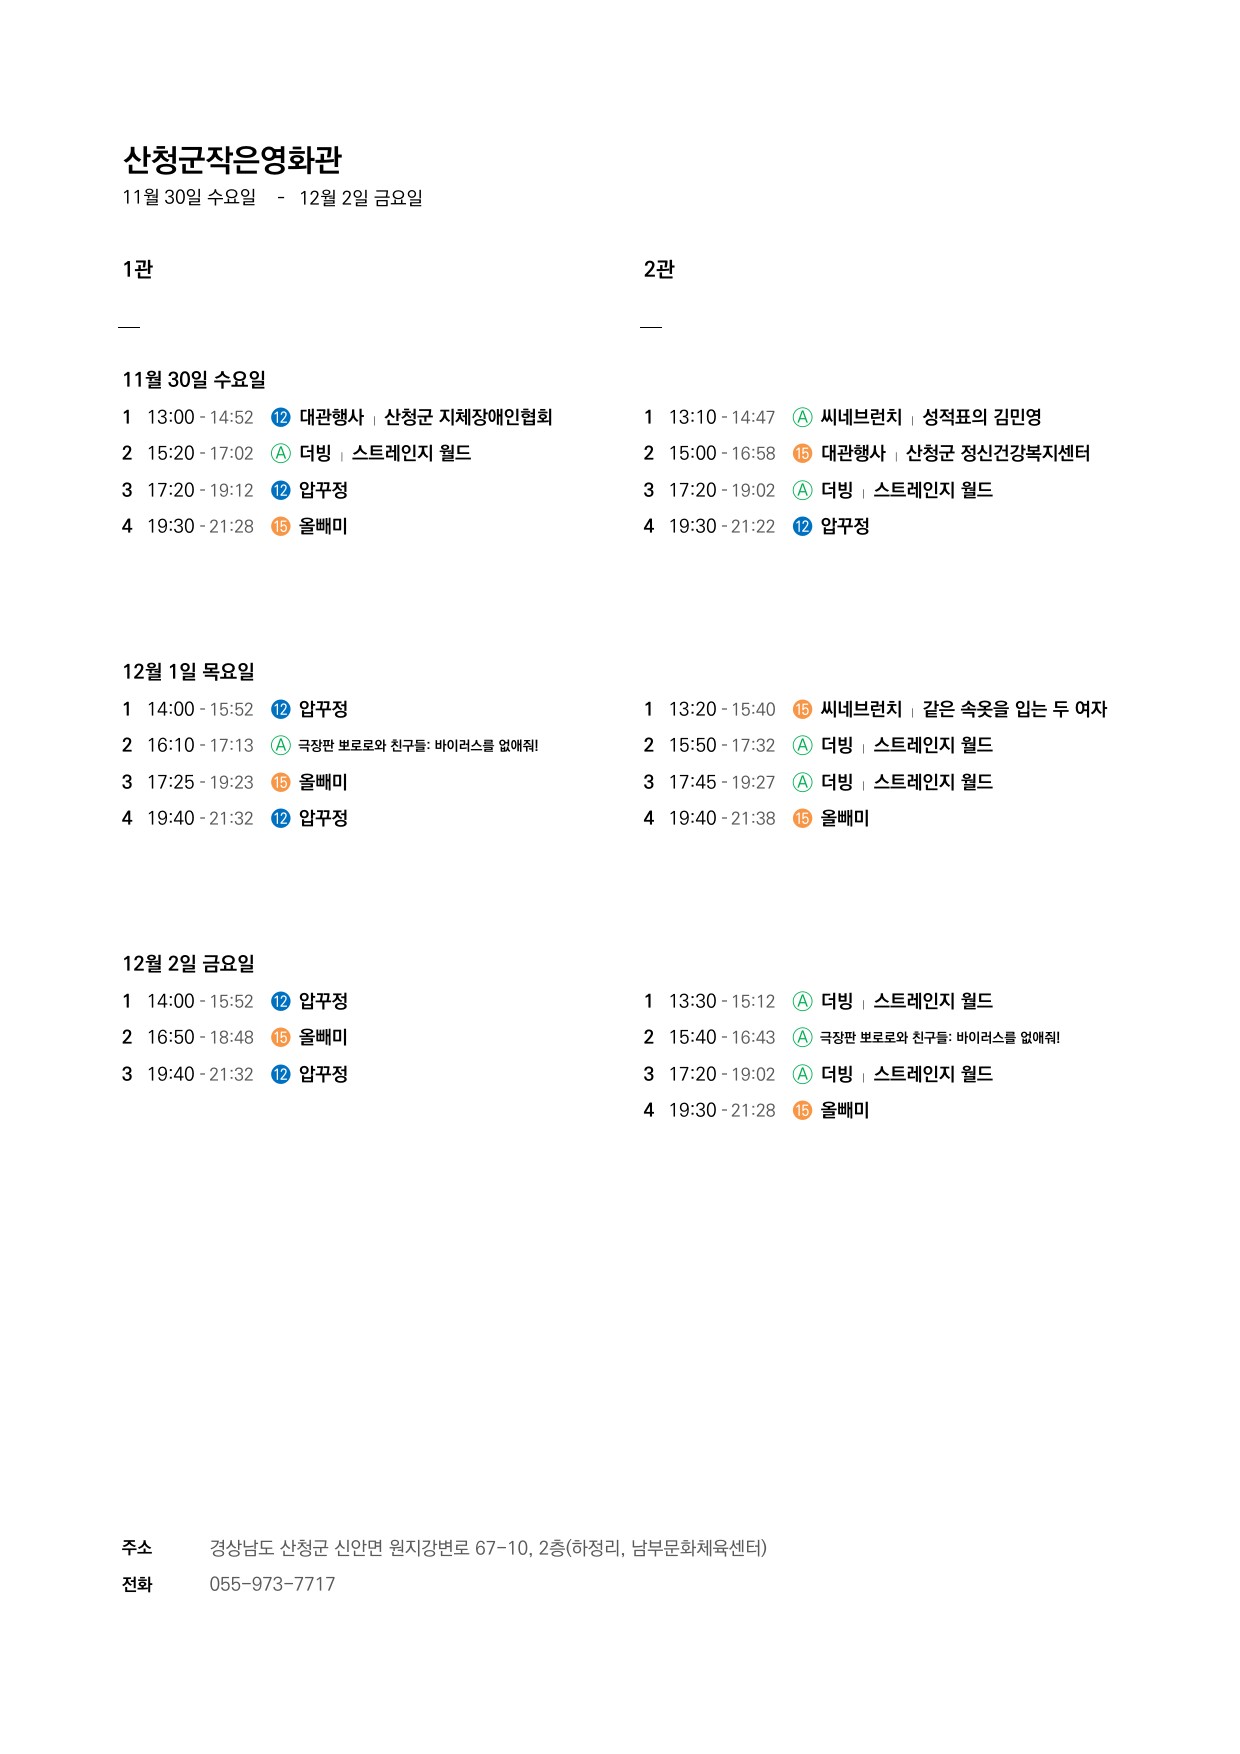 산청군 작은영화관 상영시간표 안내(11. 30.~12. 6.) 1